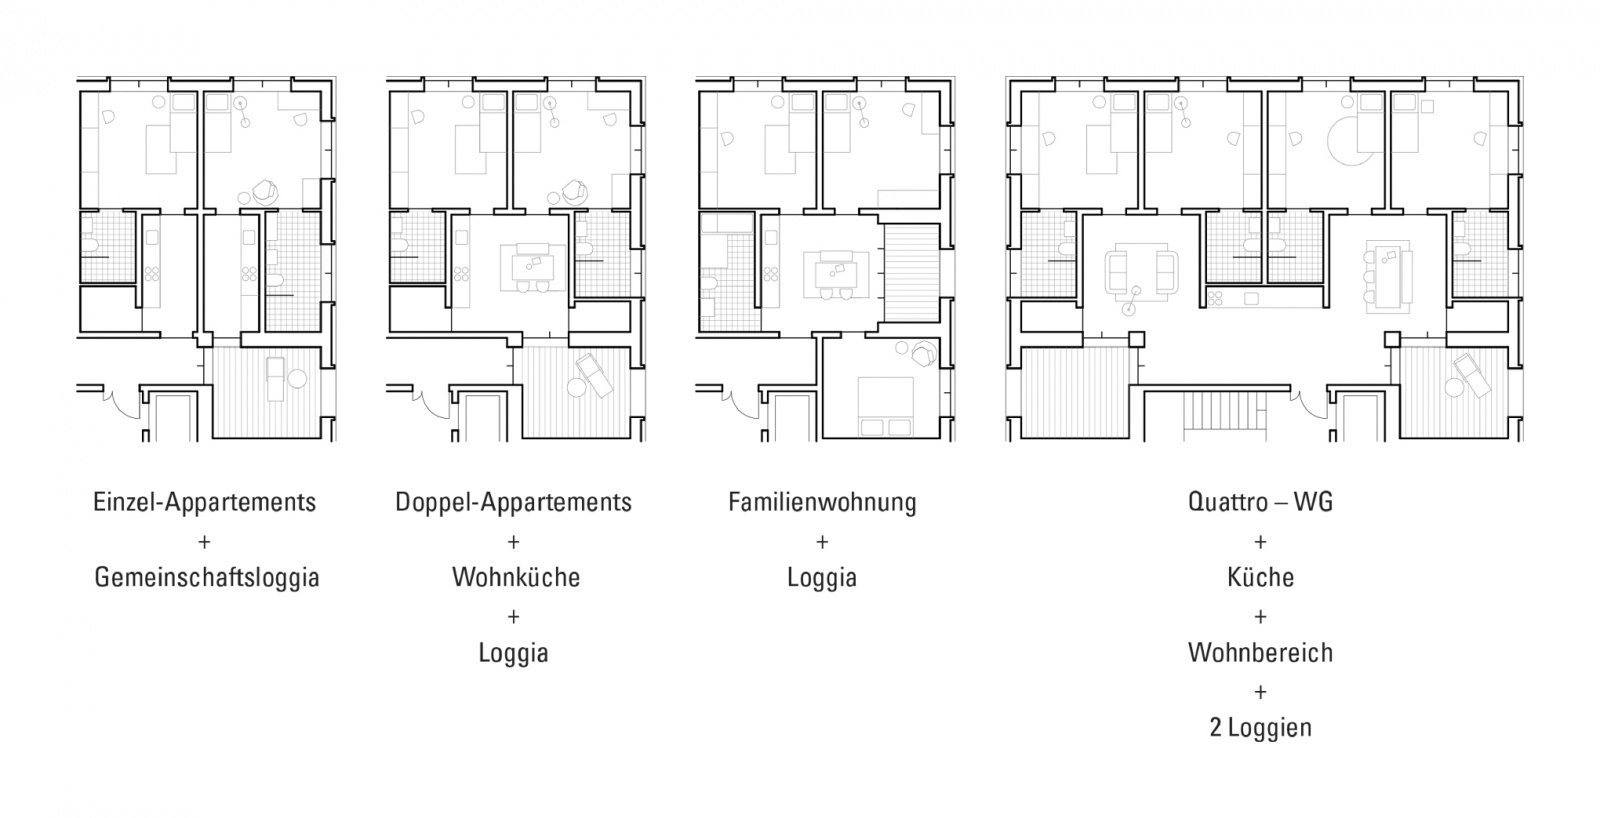 Das100 - Wasserkampf, mögliche Wohnformen im Haus, Bild: Architektur Büro Dipl.-Ing. Thomas Wasserkampf, Aachen / Max Wasserkampf, Weimar